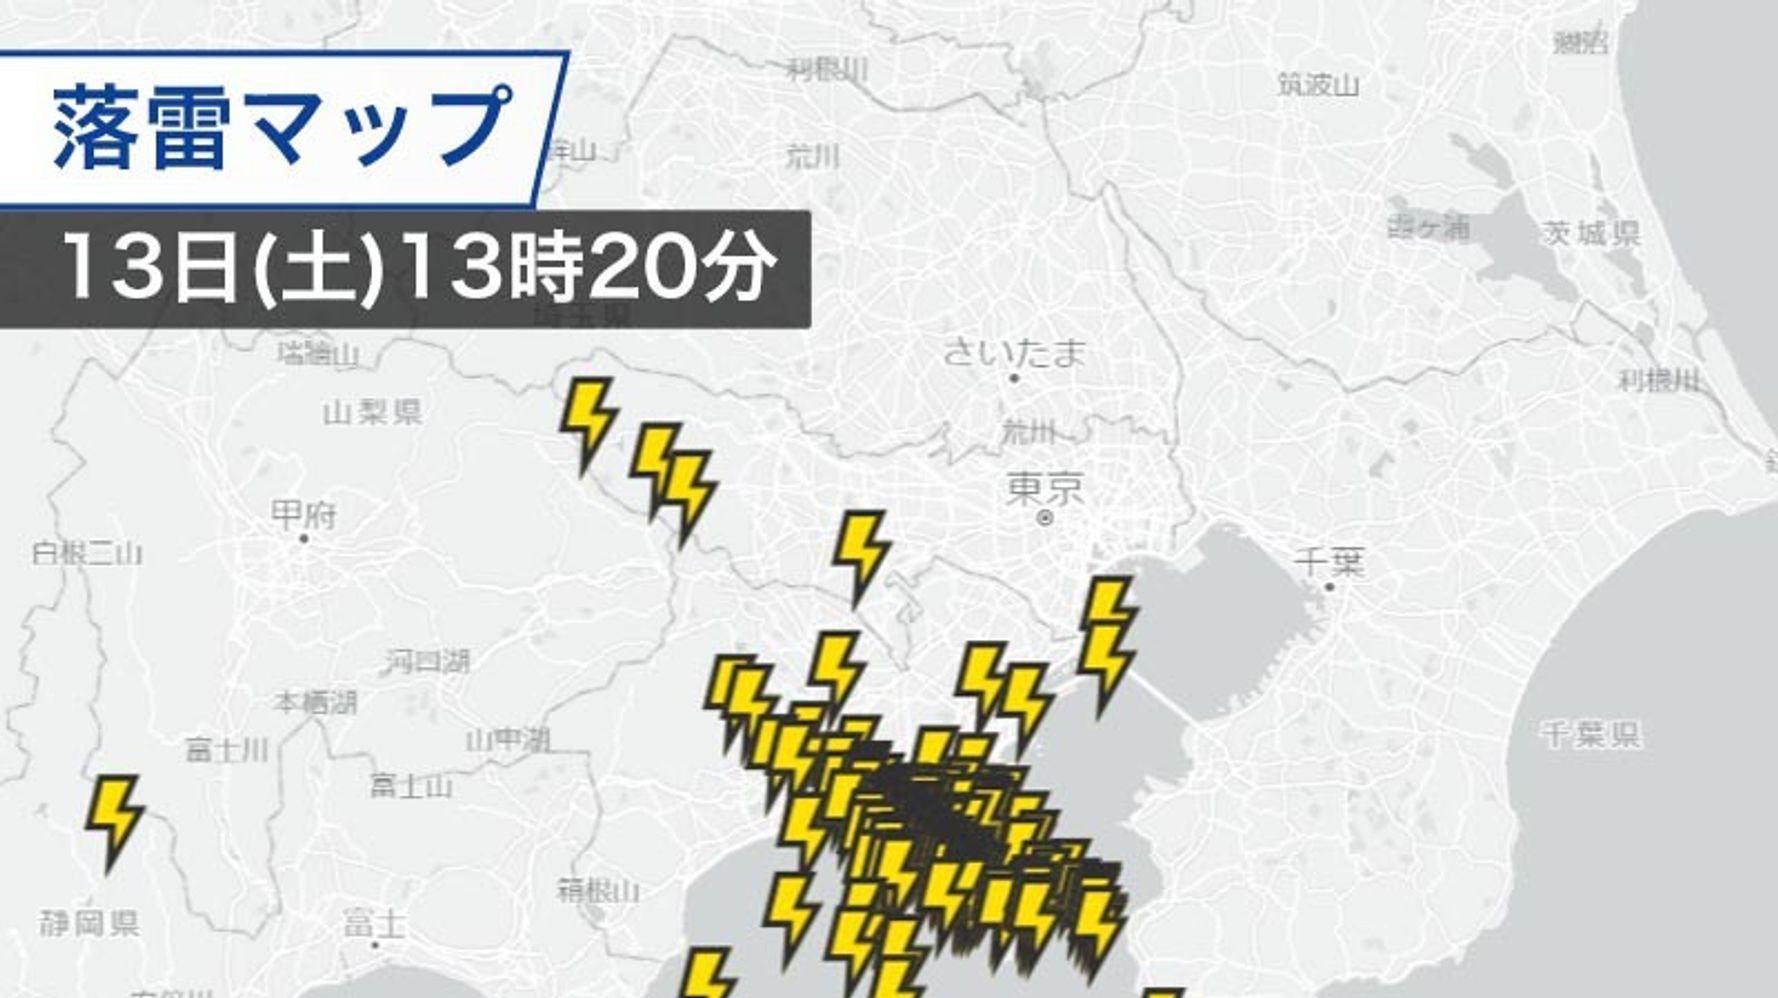 東京 神奈川も雷を伴った激しい雨に 道路冠水や落雷 突風に警戒 ハフポスト News